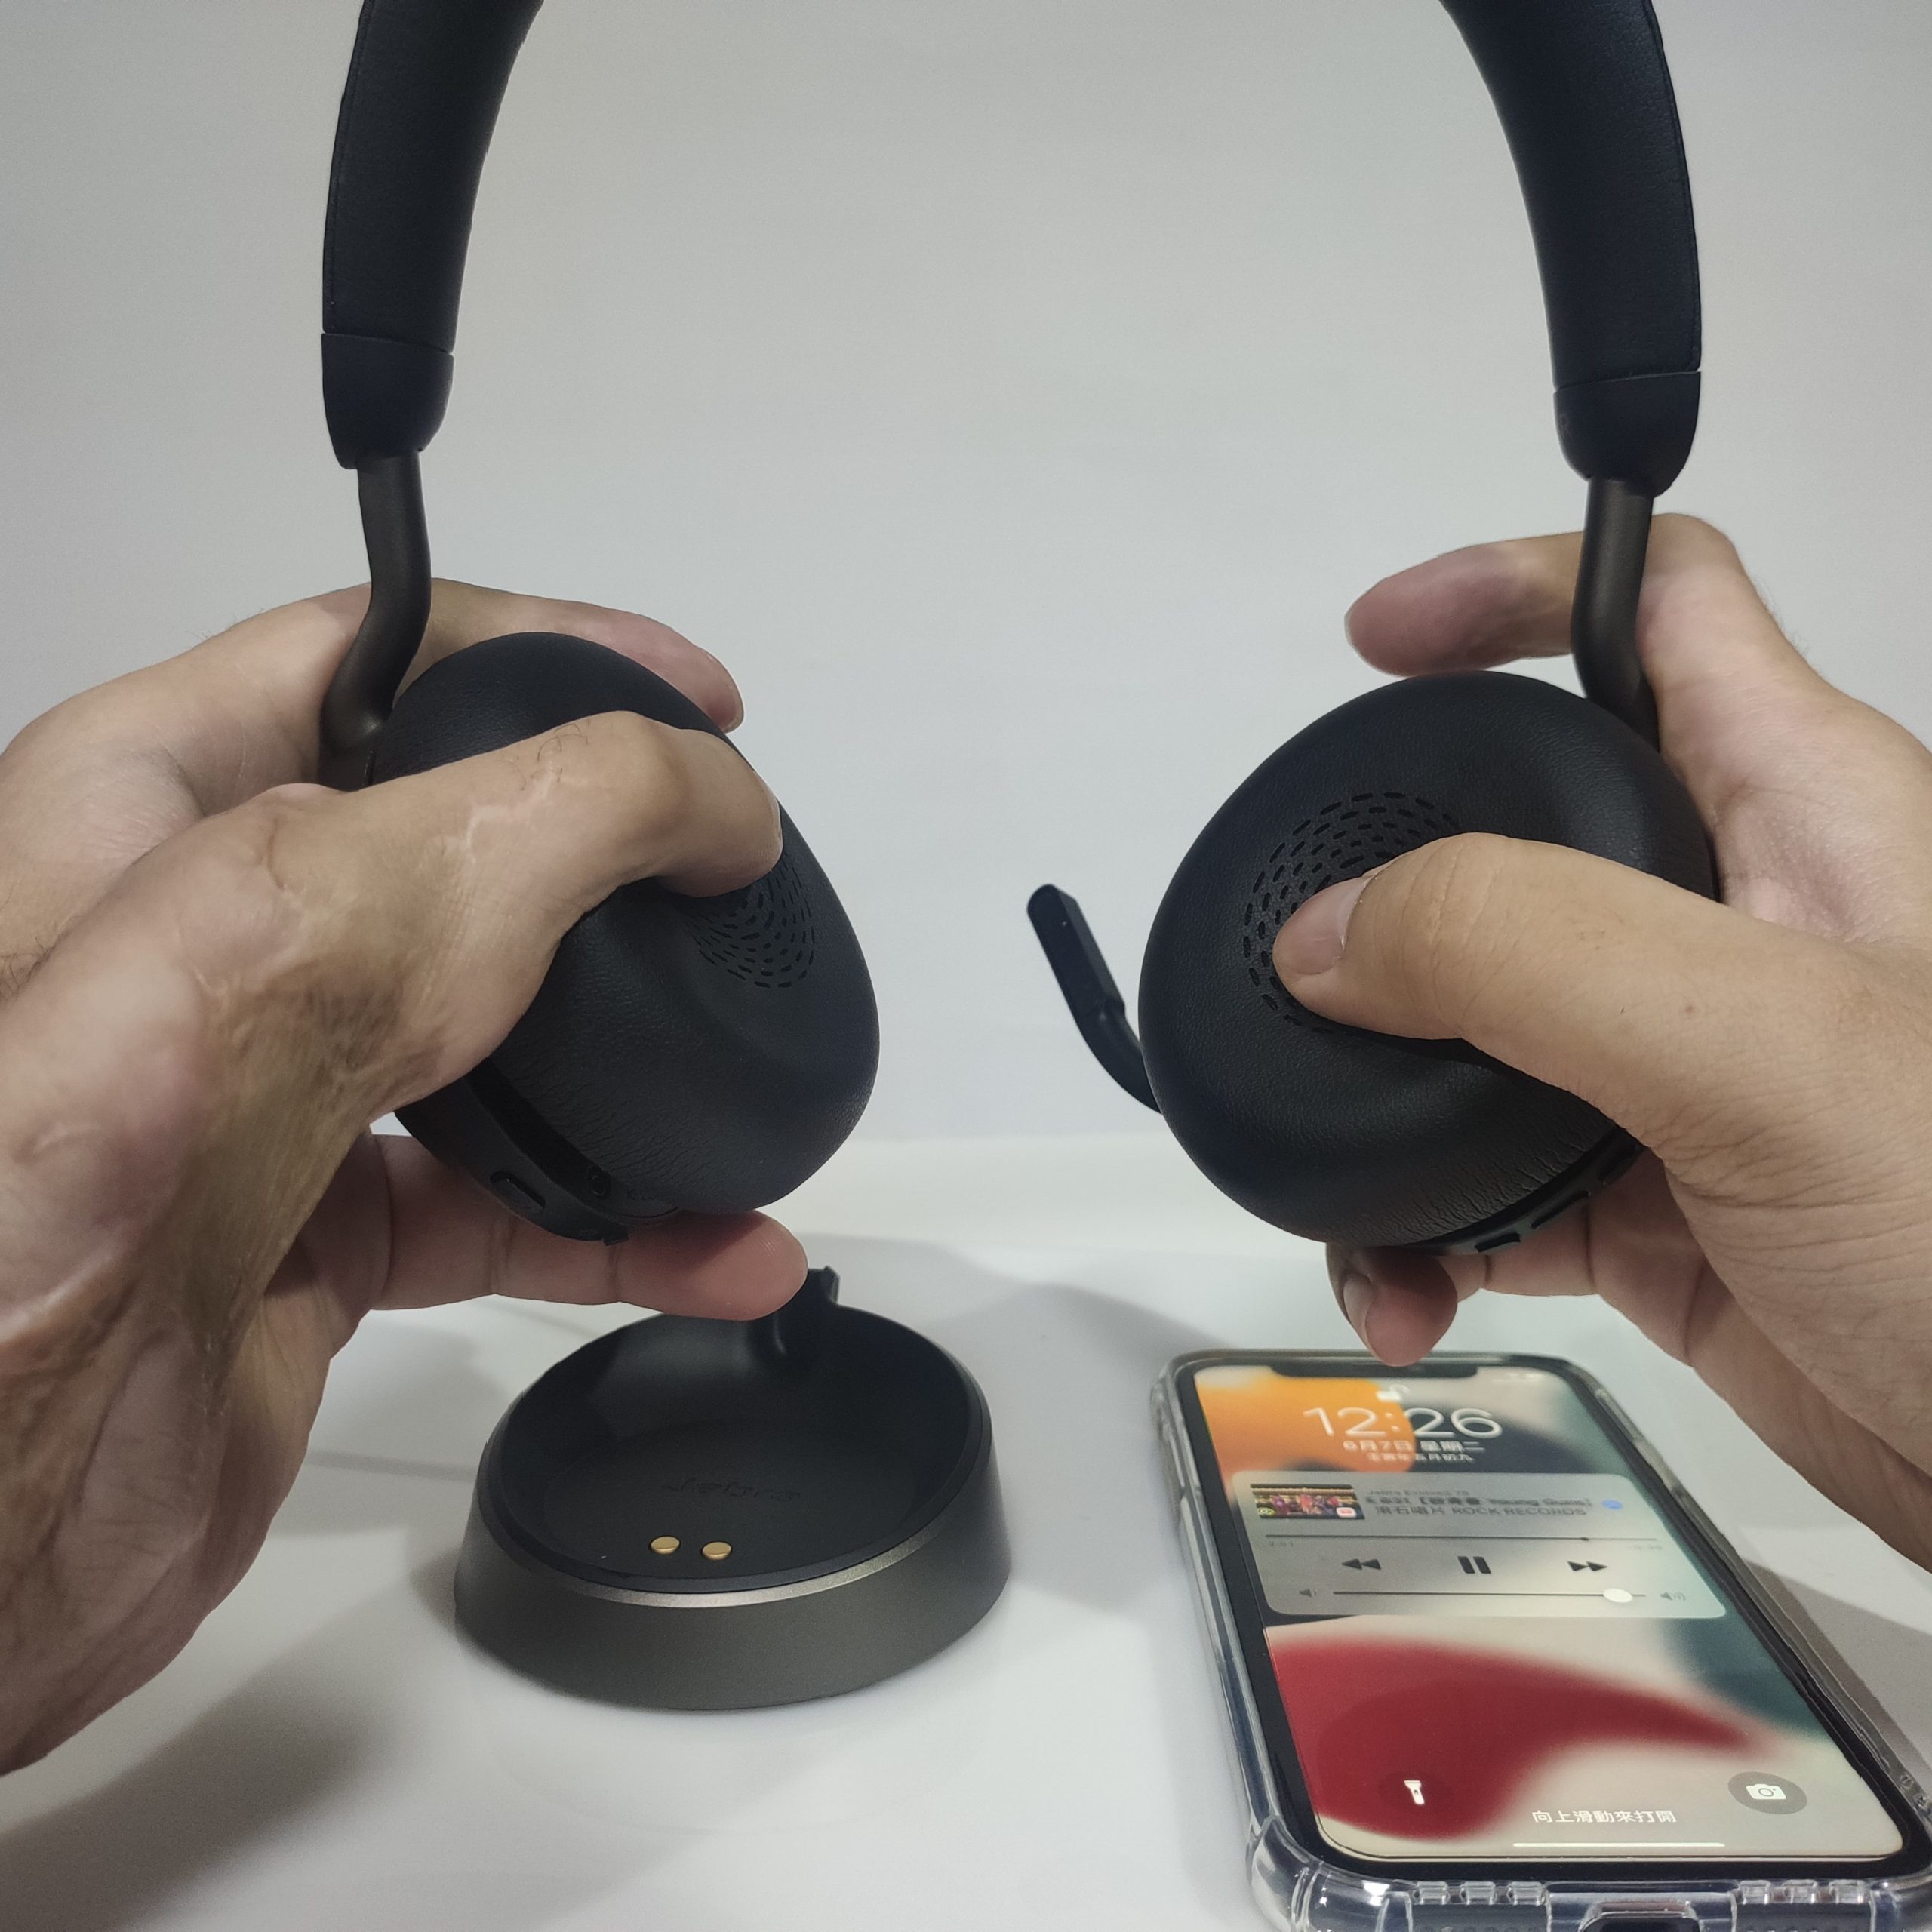 【開箱】Jabra Evolve2 75專業商務耳機，通話之王，微軟認證，收音超清晰，可調節主動降噪，2022最推薦商務藍牙耳機。 - 麥克風, 耳機, Jabra, 藍牙耳機, 藍芽耳機, 敗家輝哥, 編輯推薦, Evolve - 敗家達人推薦